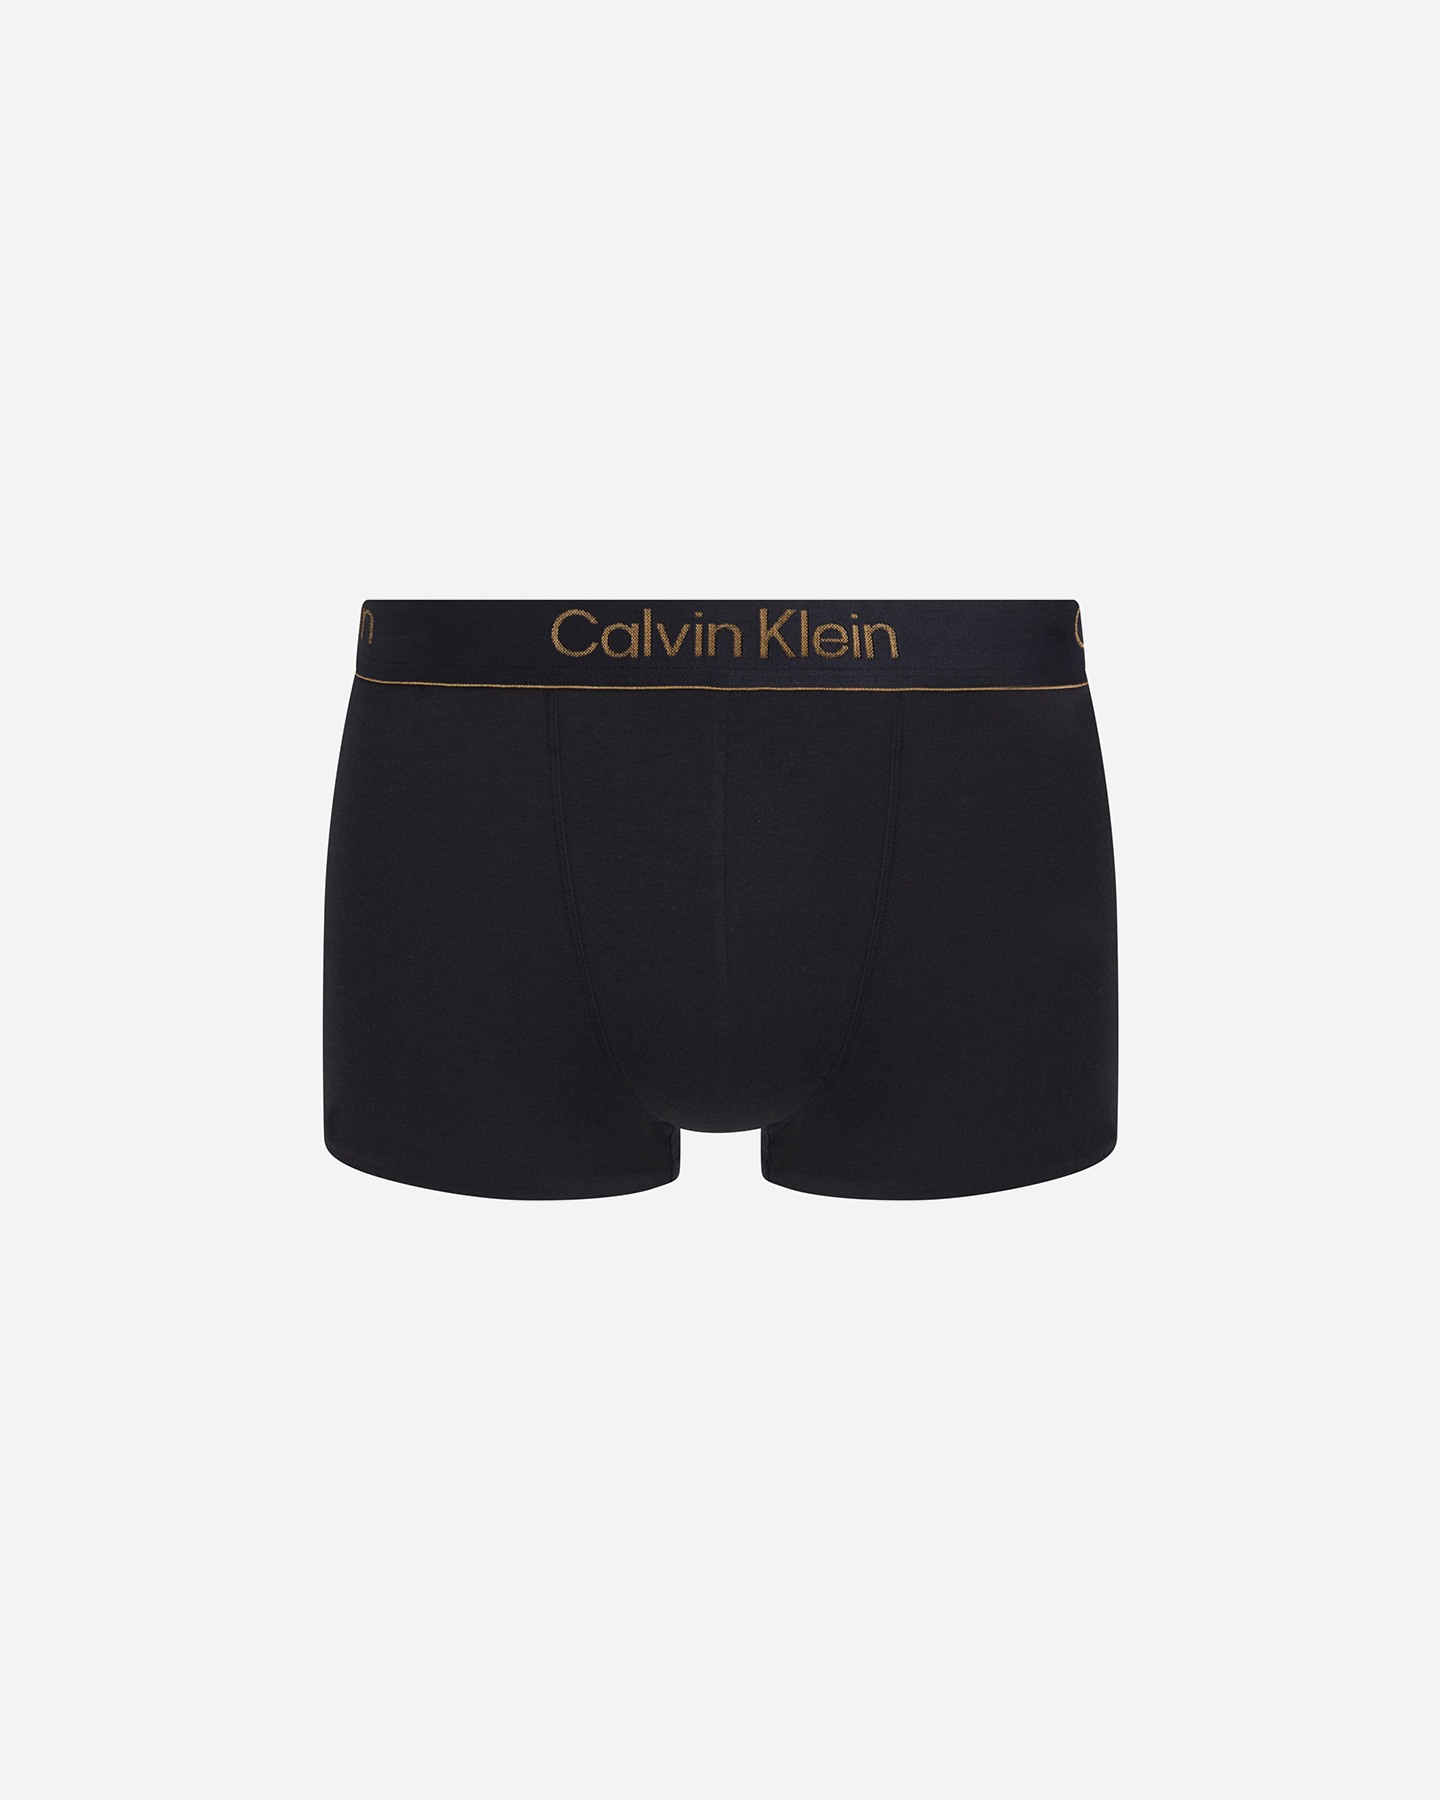 calvin klein underwear boxer low rise m - intimo - uomo